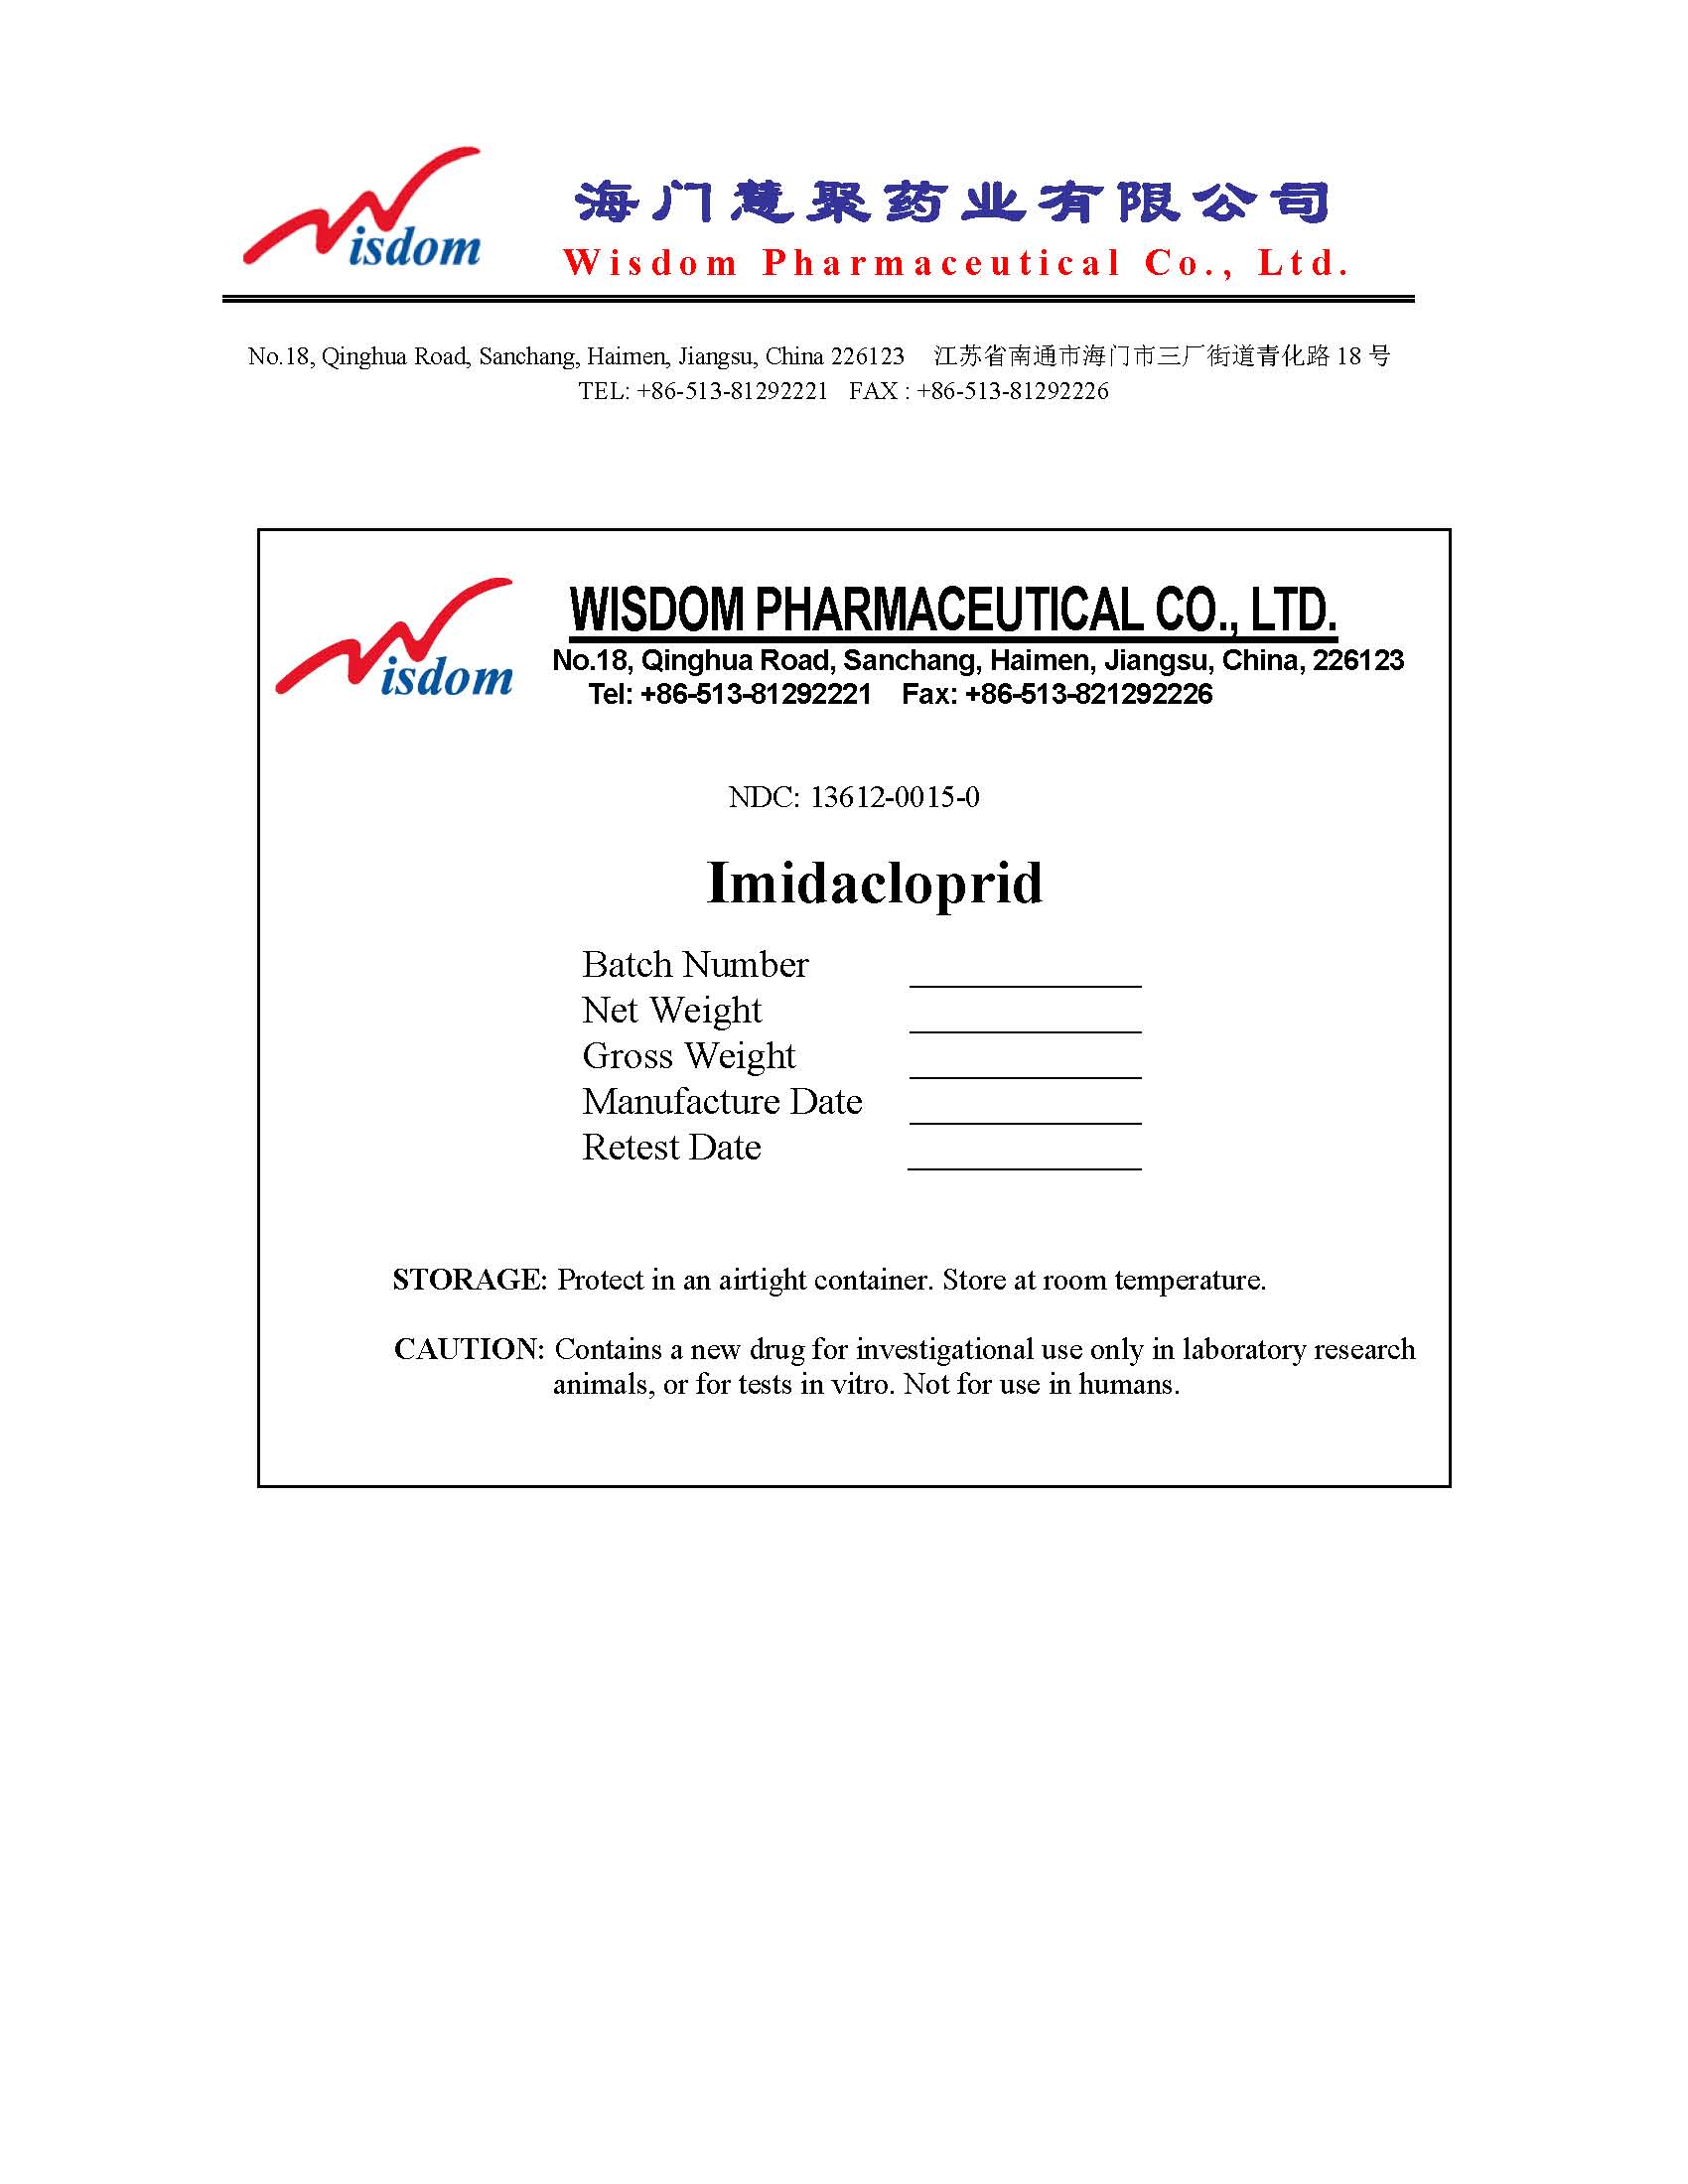 Image of Imidacloprid 10kg Label